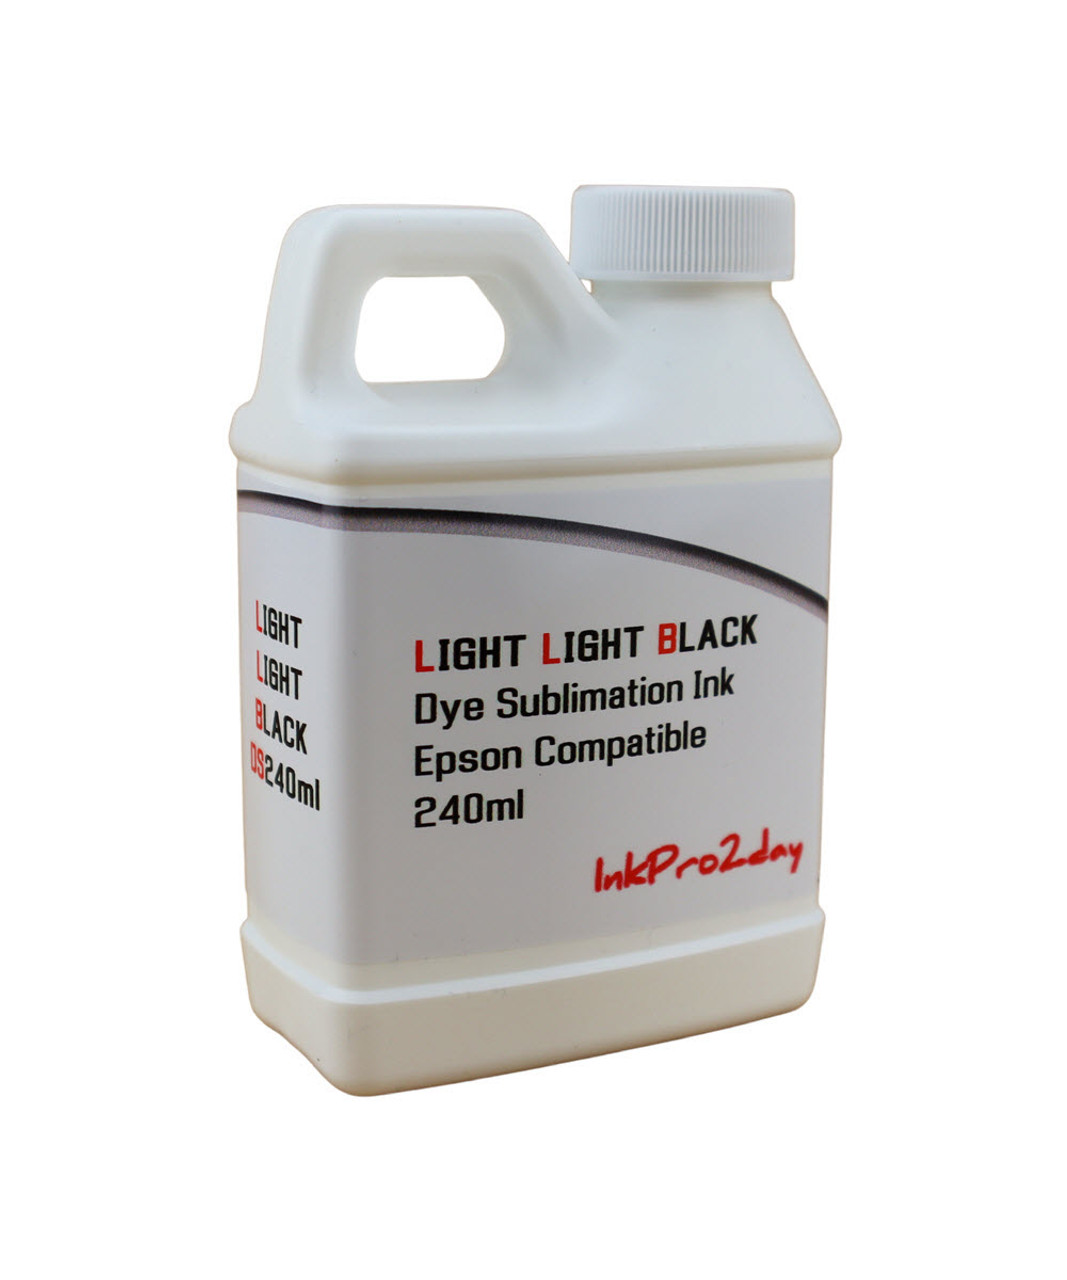 Light Light Black Dye Sublimation Ink 240ml Bottle for Epson Stylus Pro 7800 9800 printers